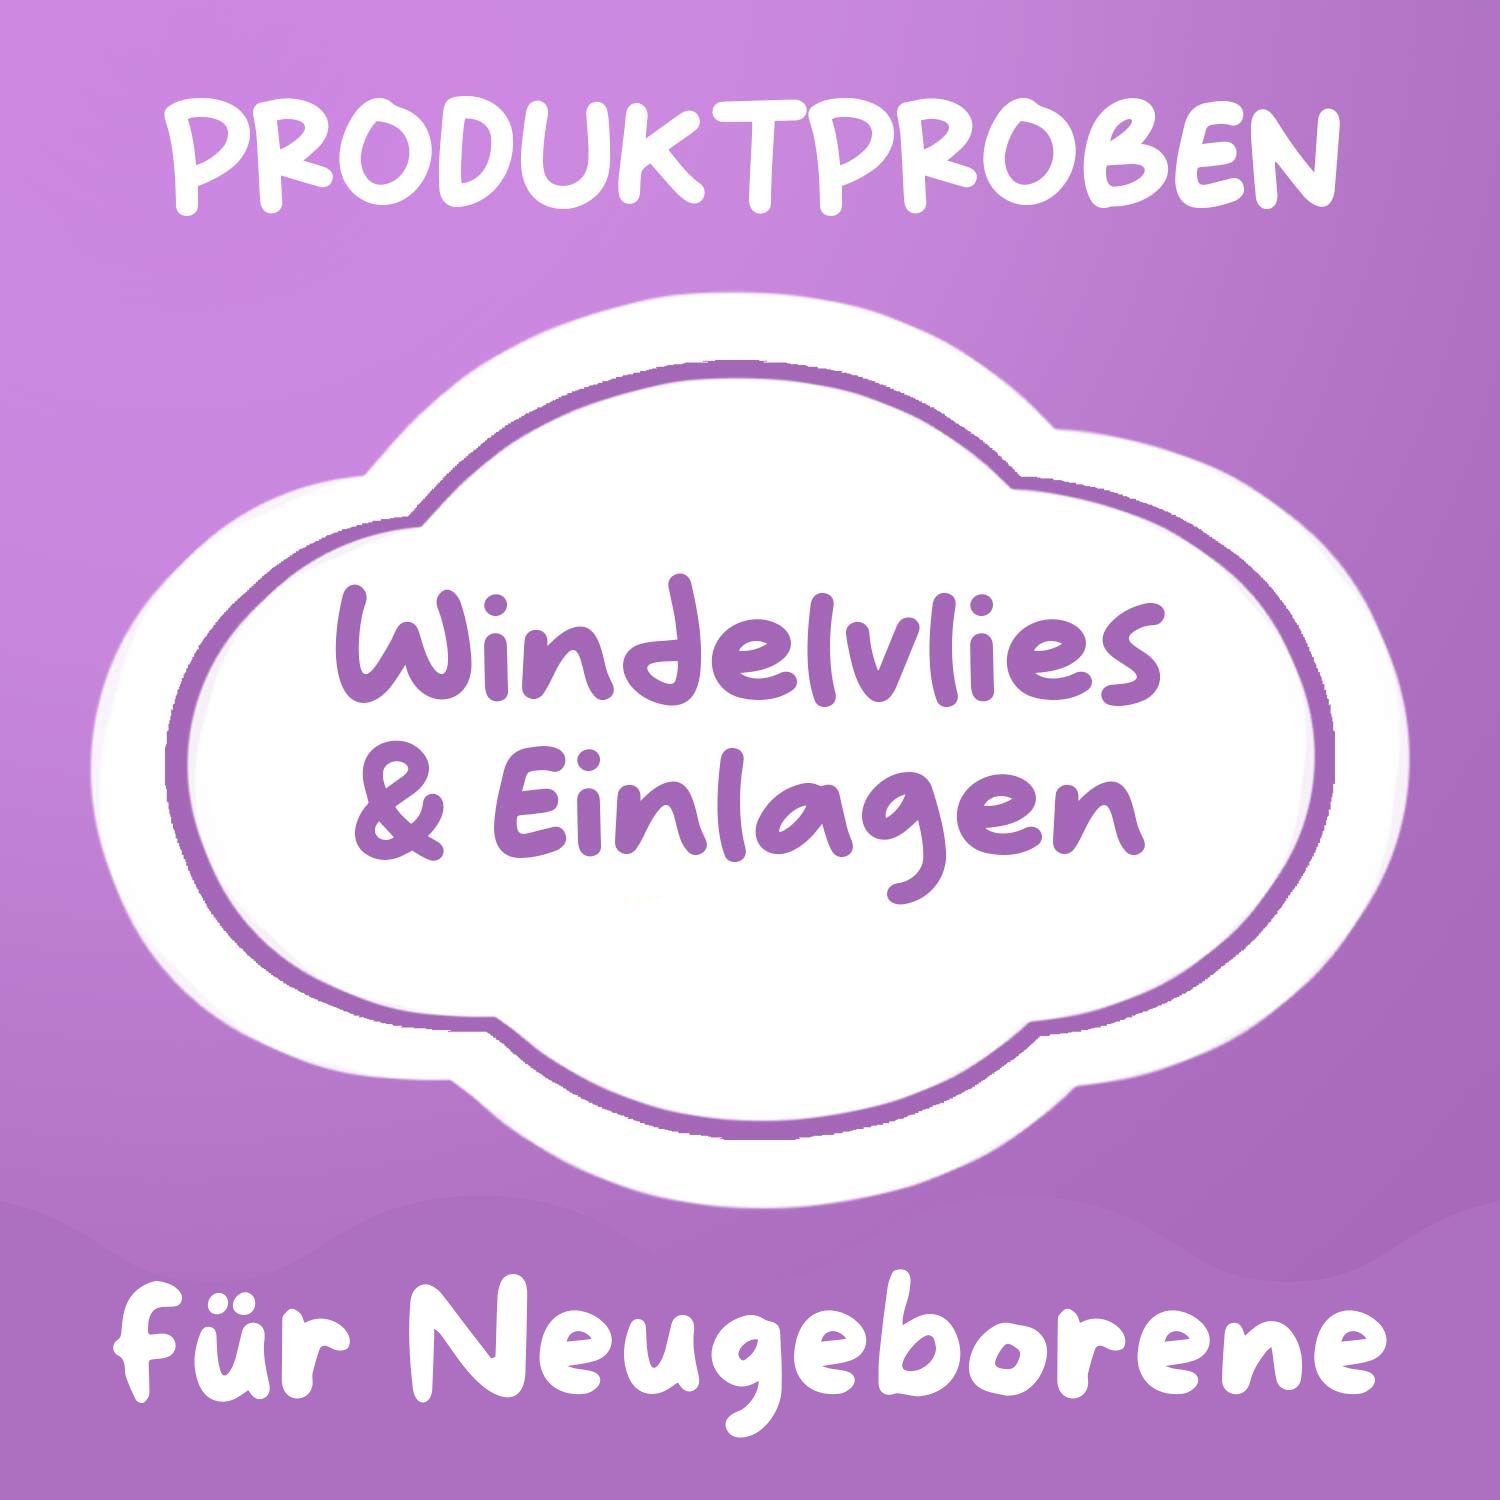 Produktprobe: Windelvlies + Einlagen für Neugeborene